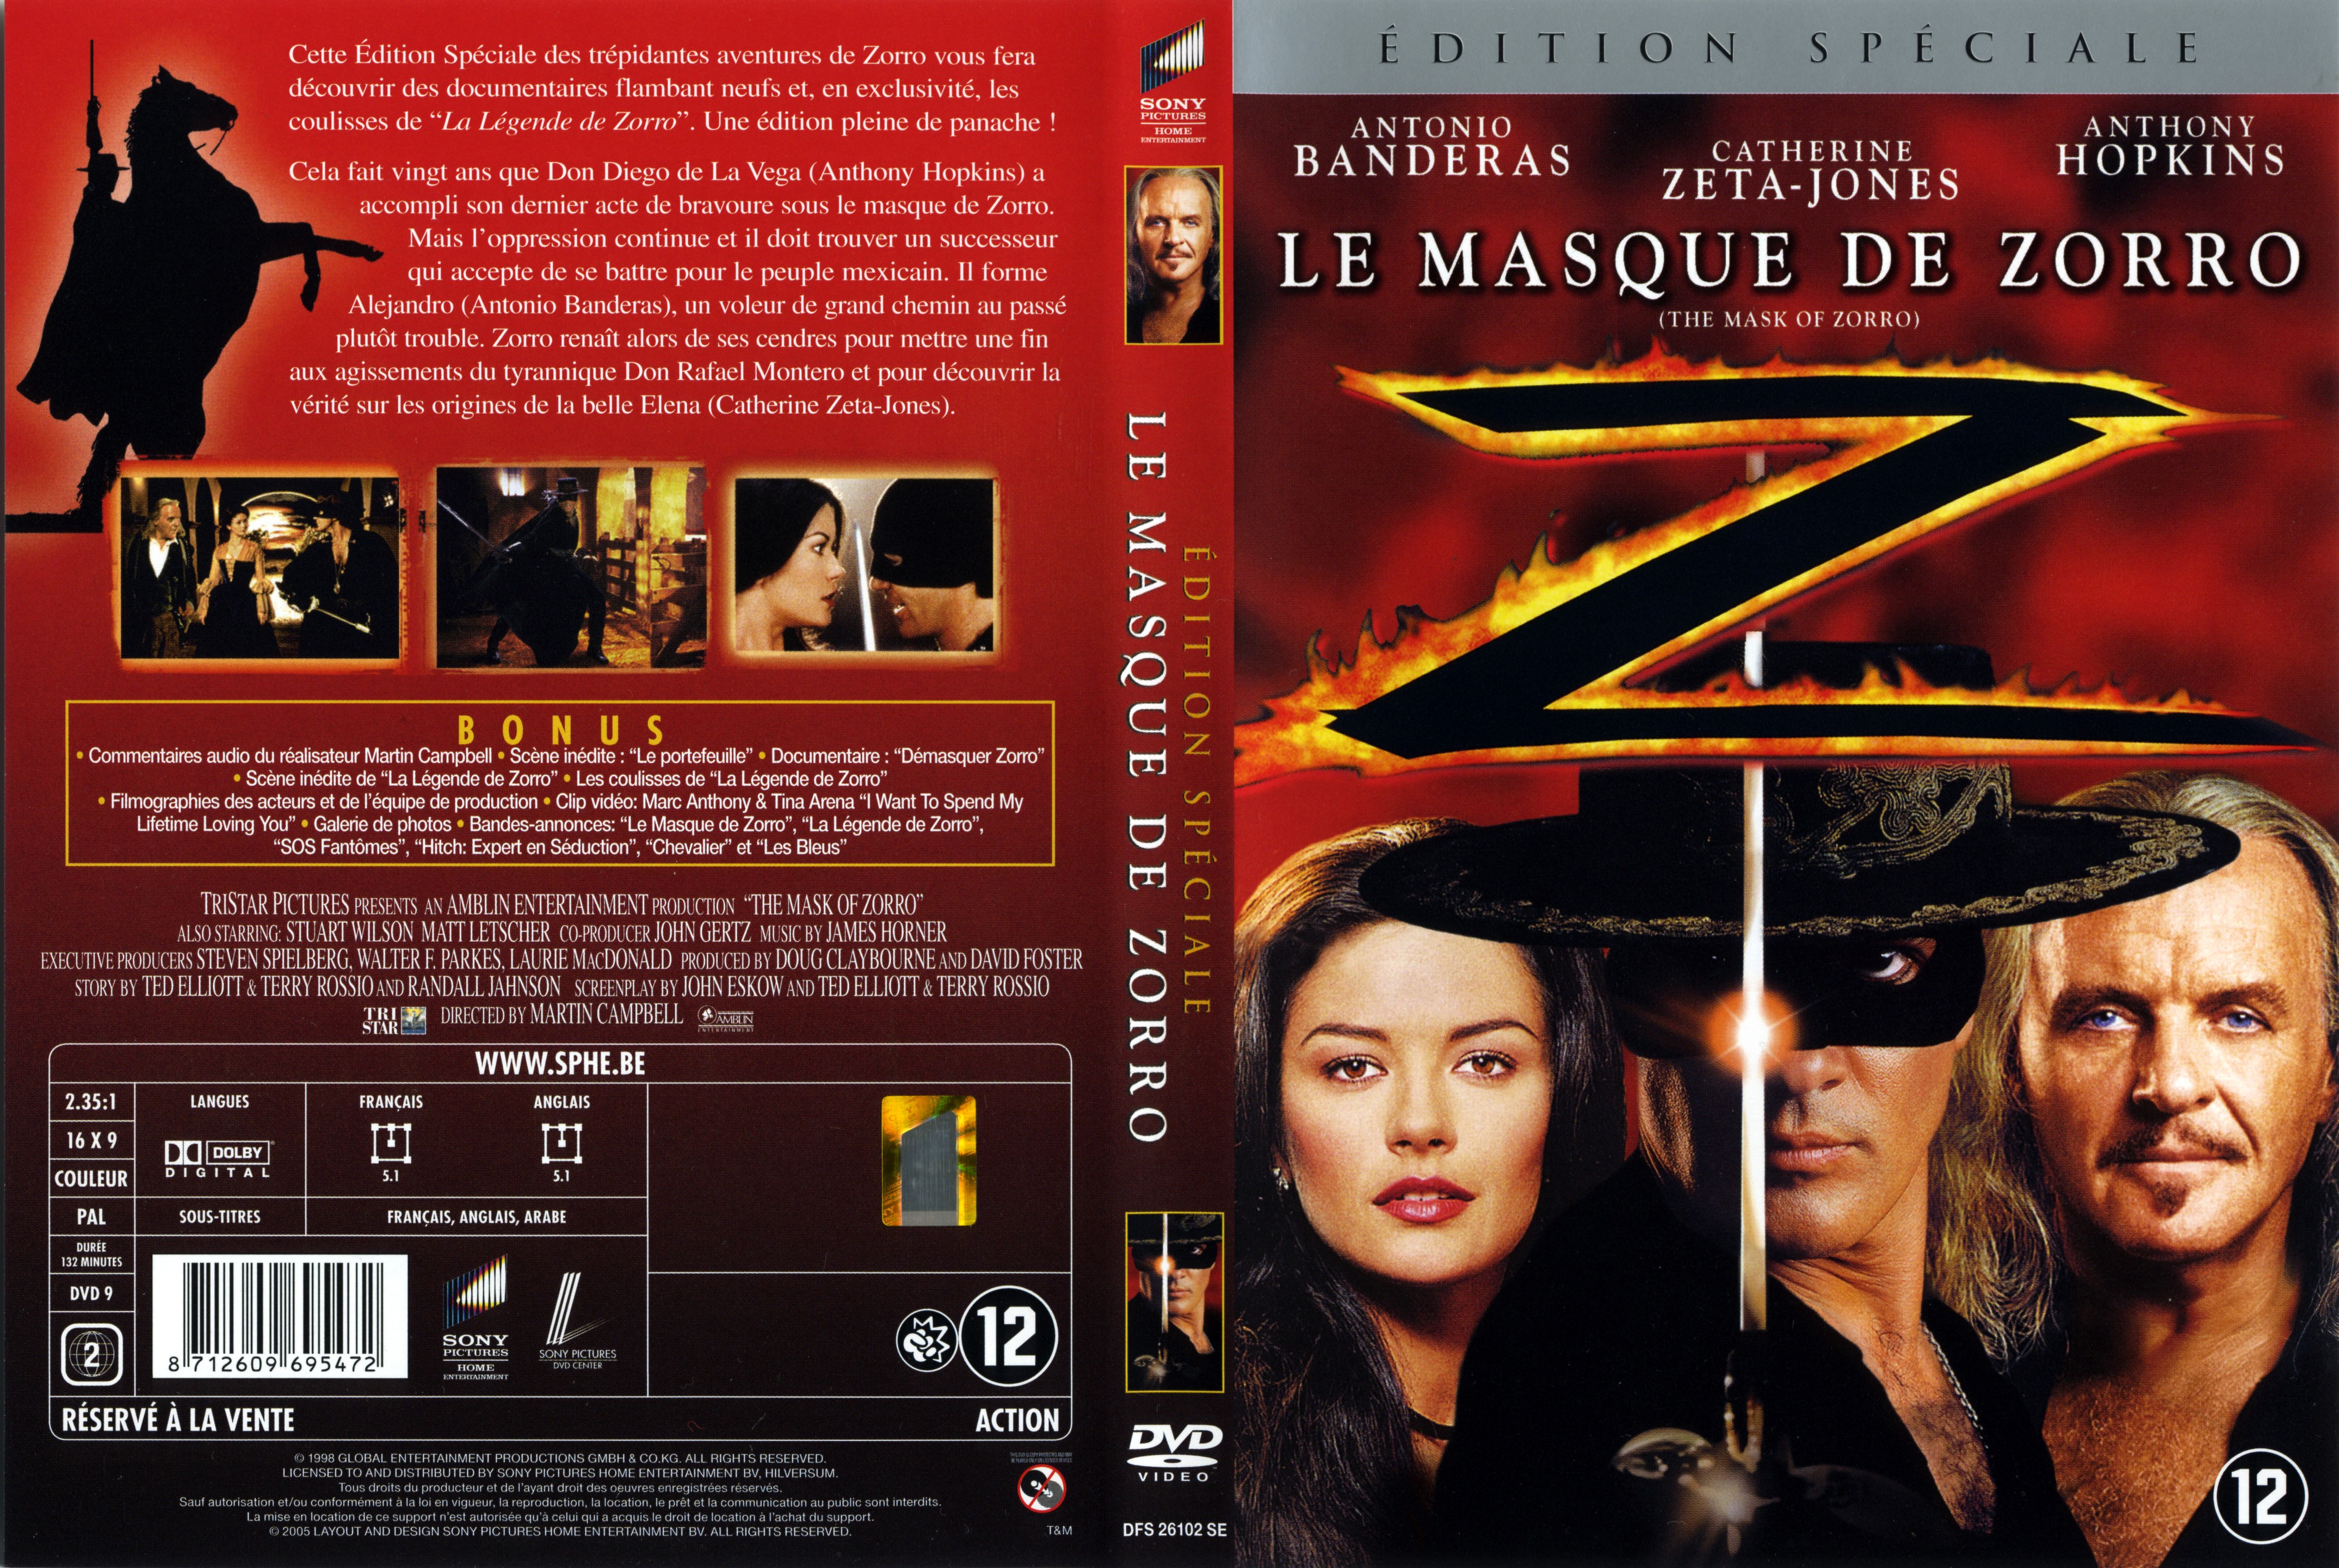 Jaquette DVD Le masque de Zorro v3